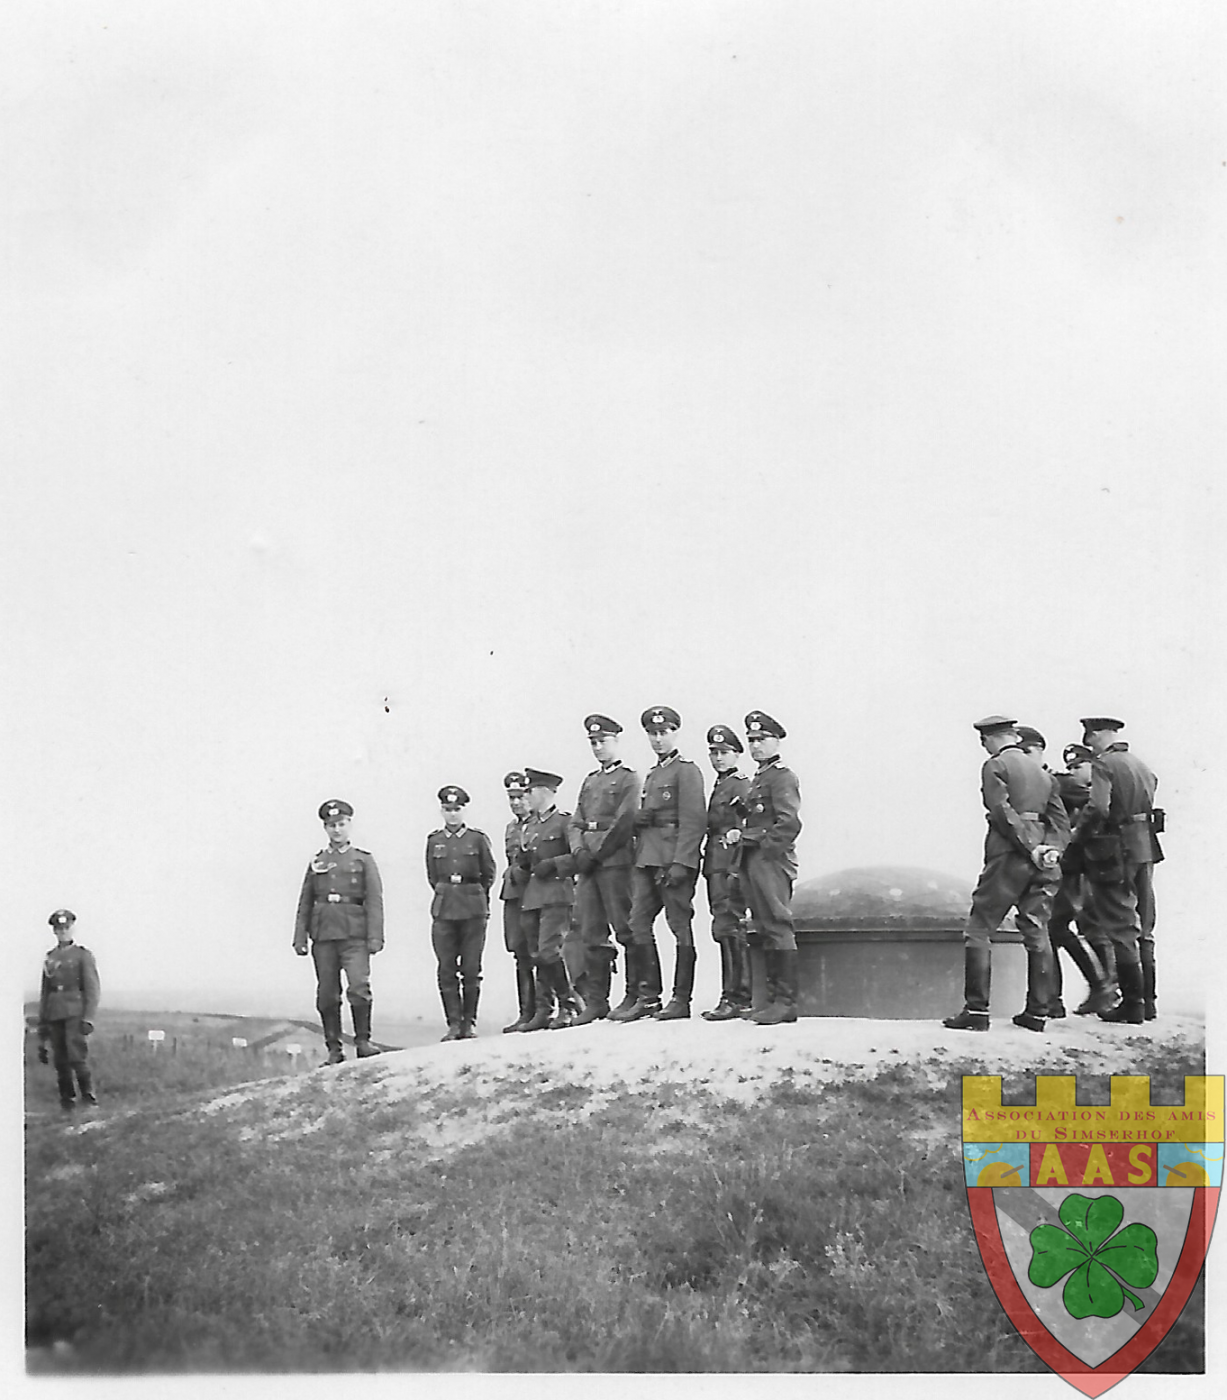 Ligne Maginot - SIMSERHOF - (Ouvrage d'artillerie) - Bloc 1 (?)
Soldats allemands au-dessus d'un bloc de combat, à proximité d'une tourelle. 